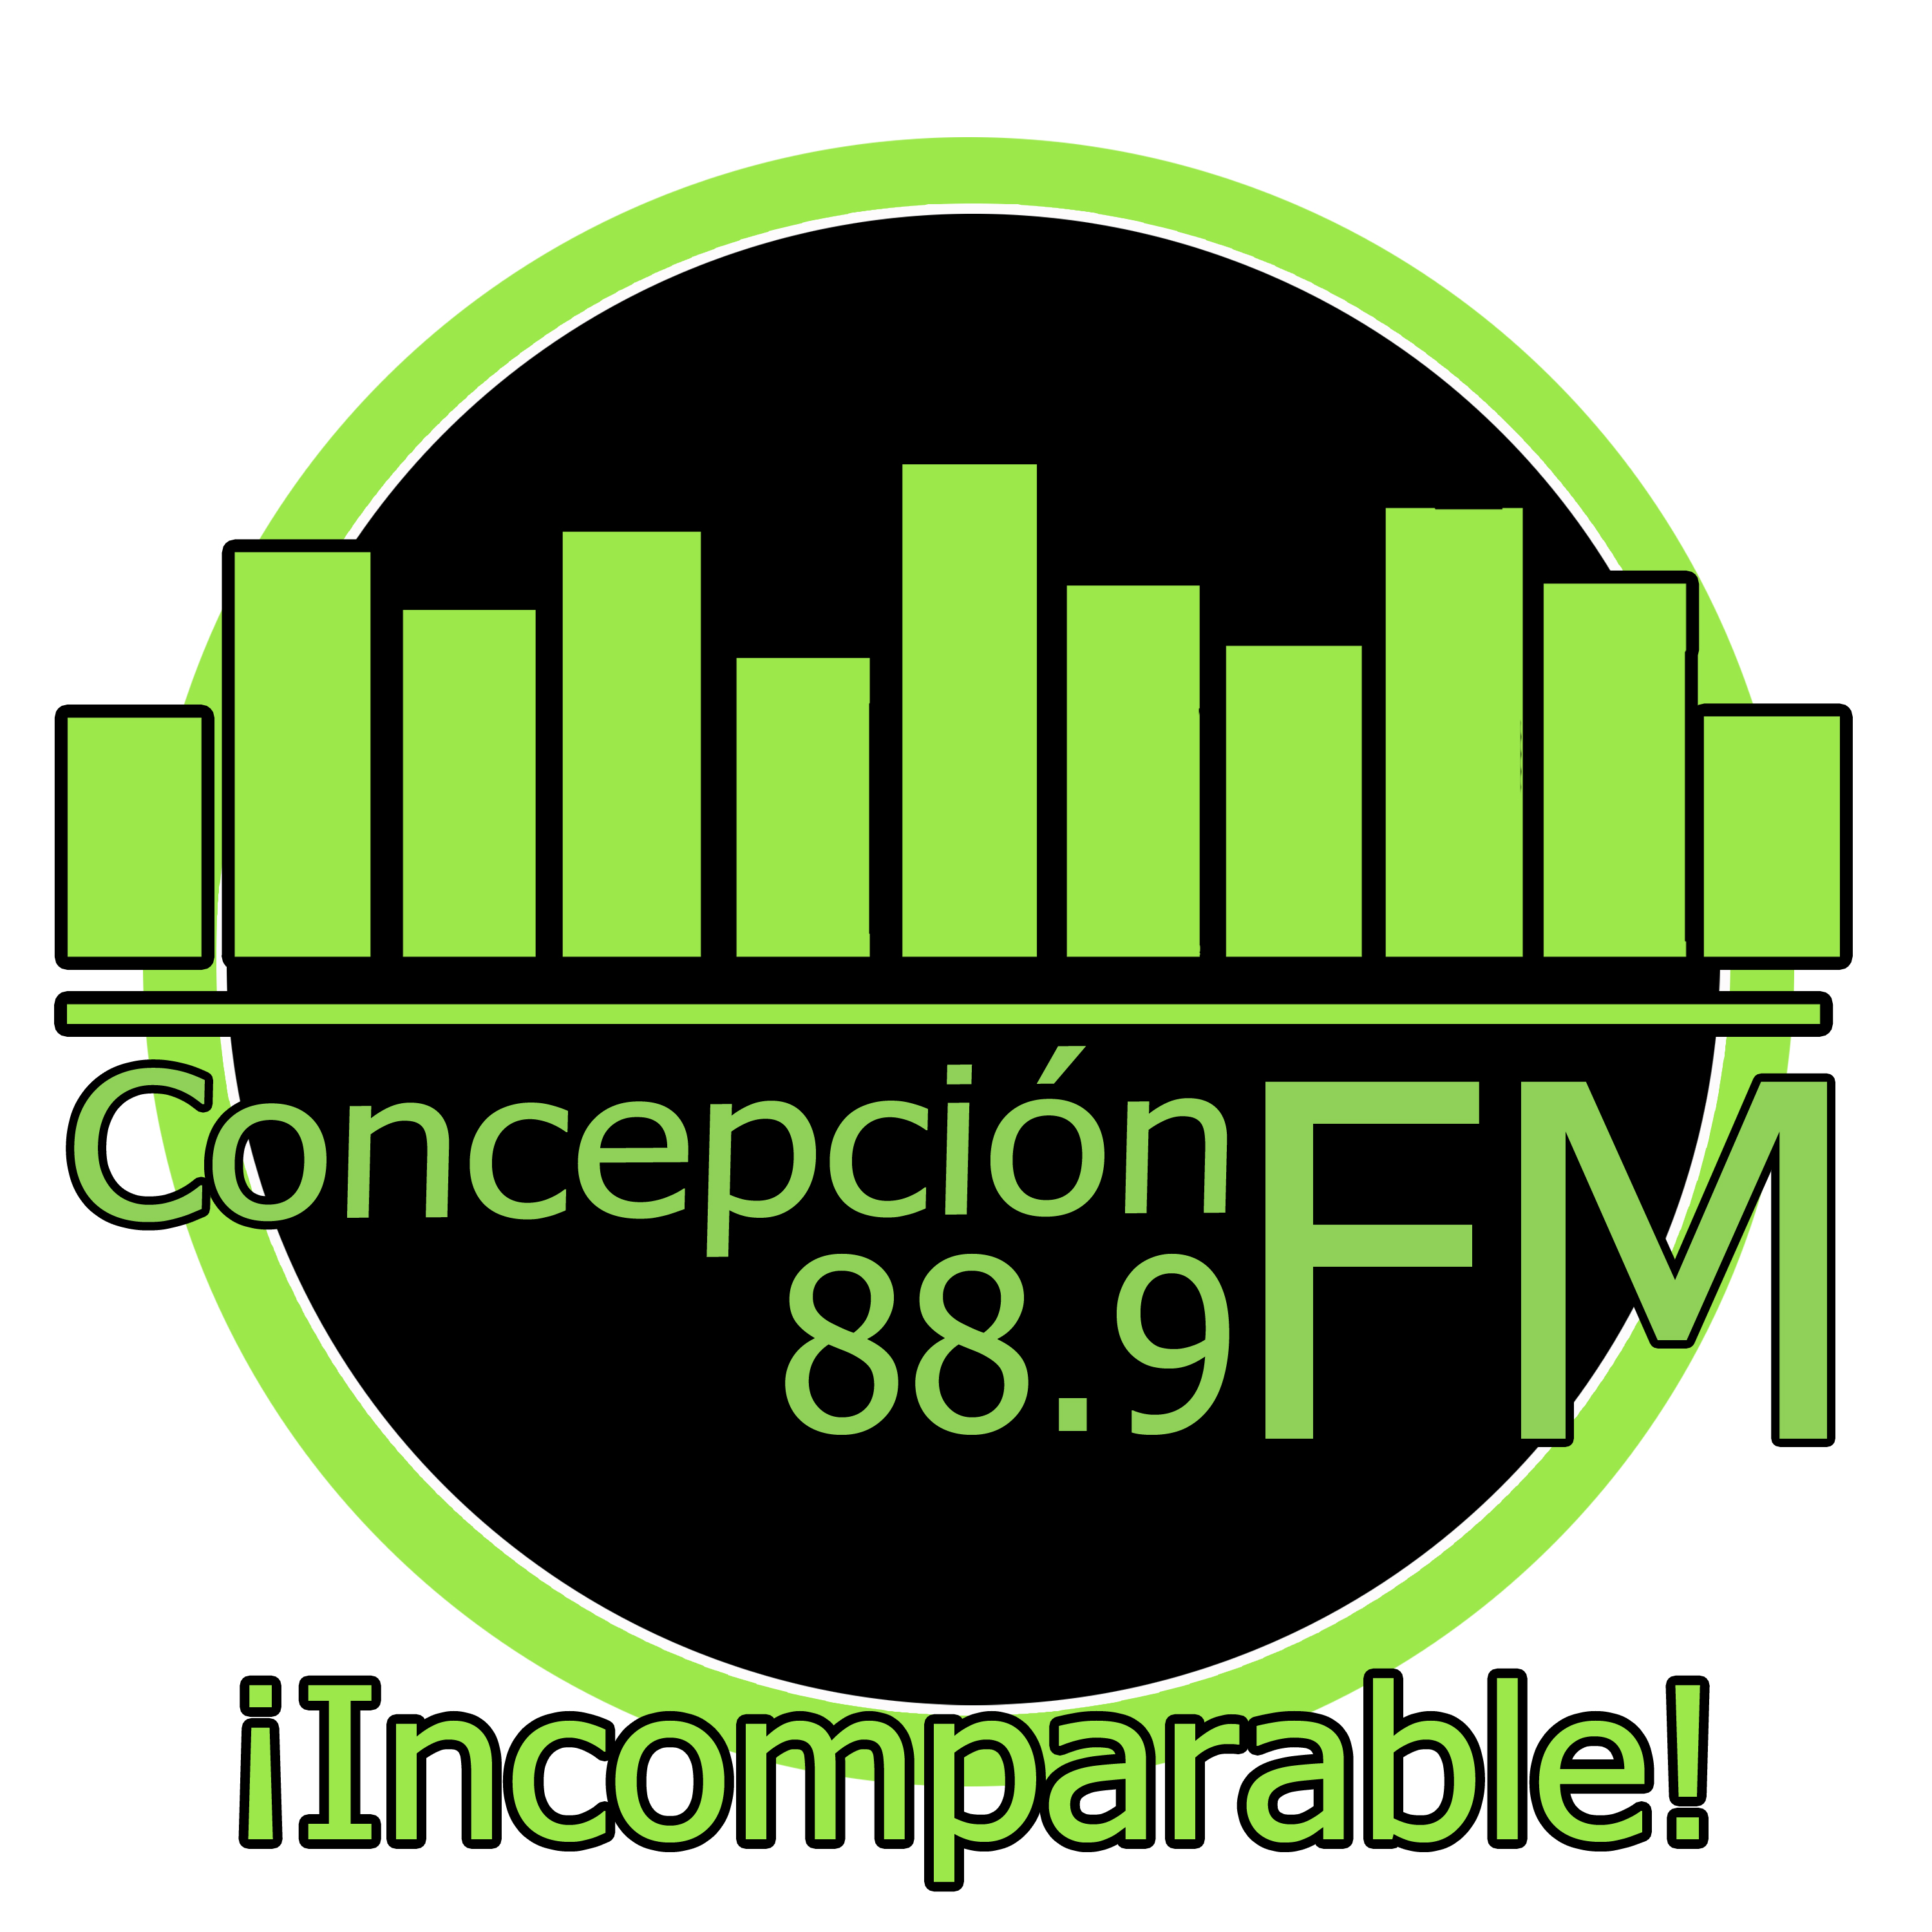 Concepción FM 88.9